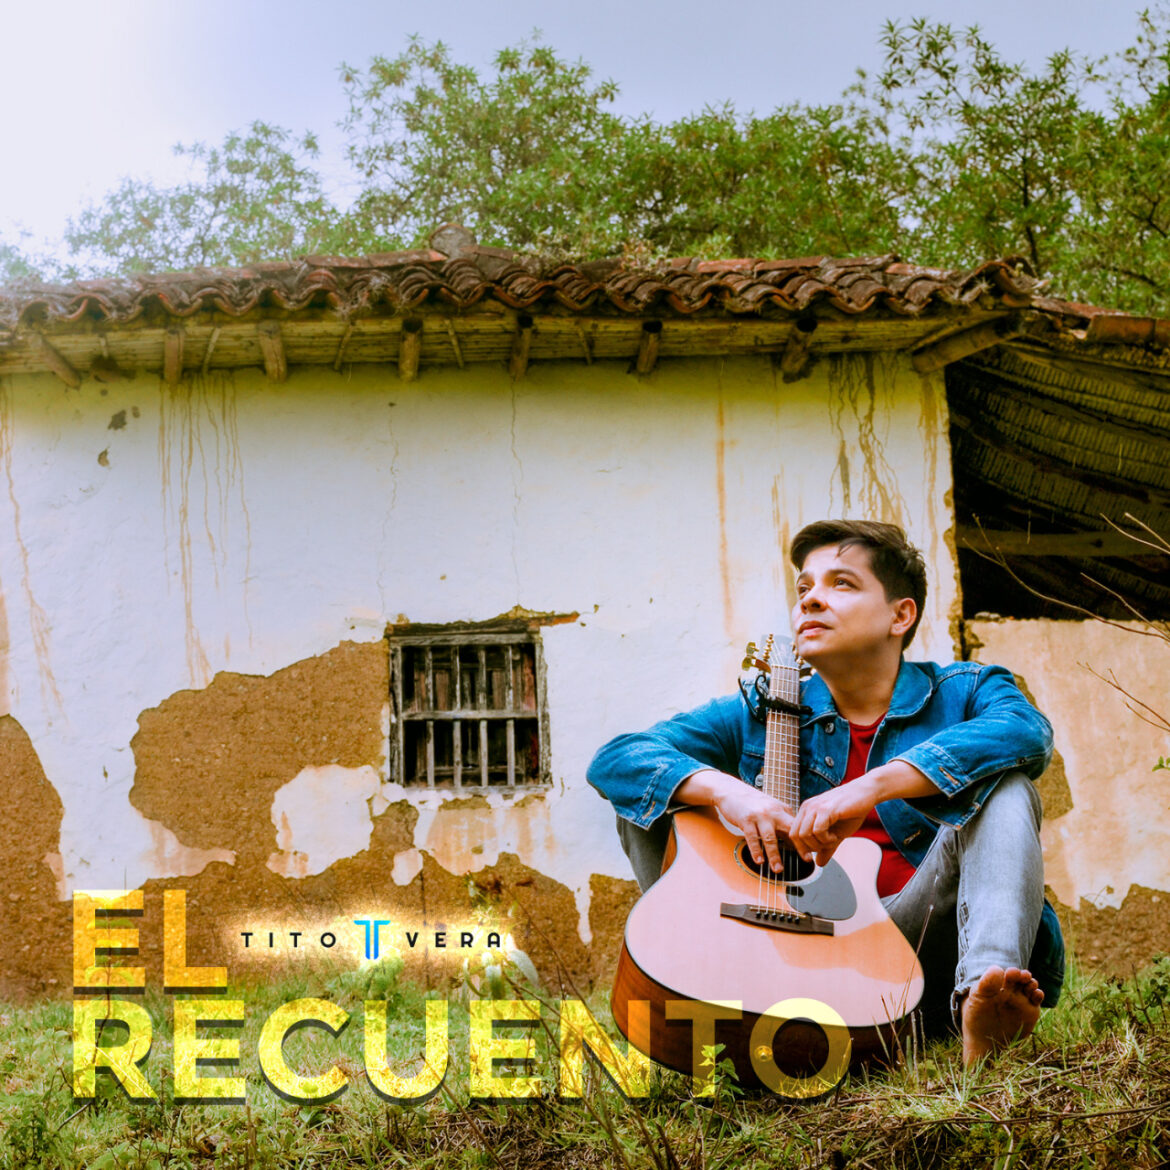 El cantautor colombiano Tito Vera lanza ‘El recuento’, un homenaje a sus raíces